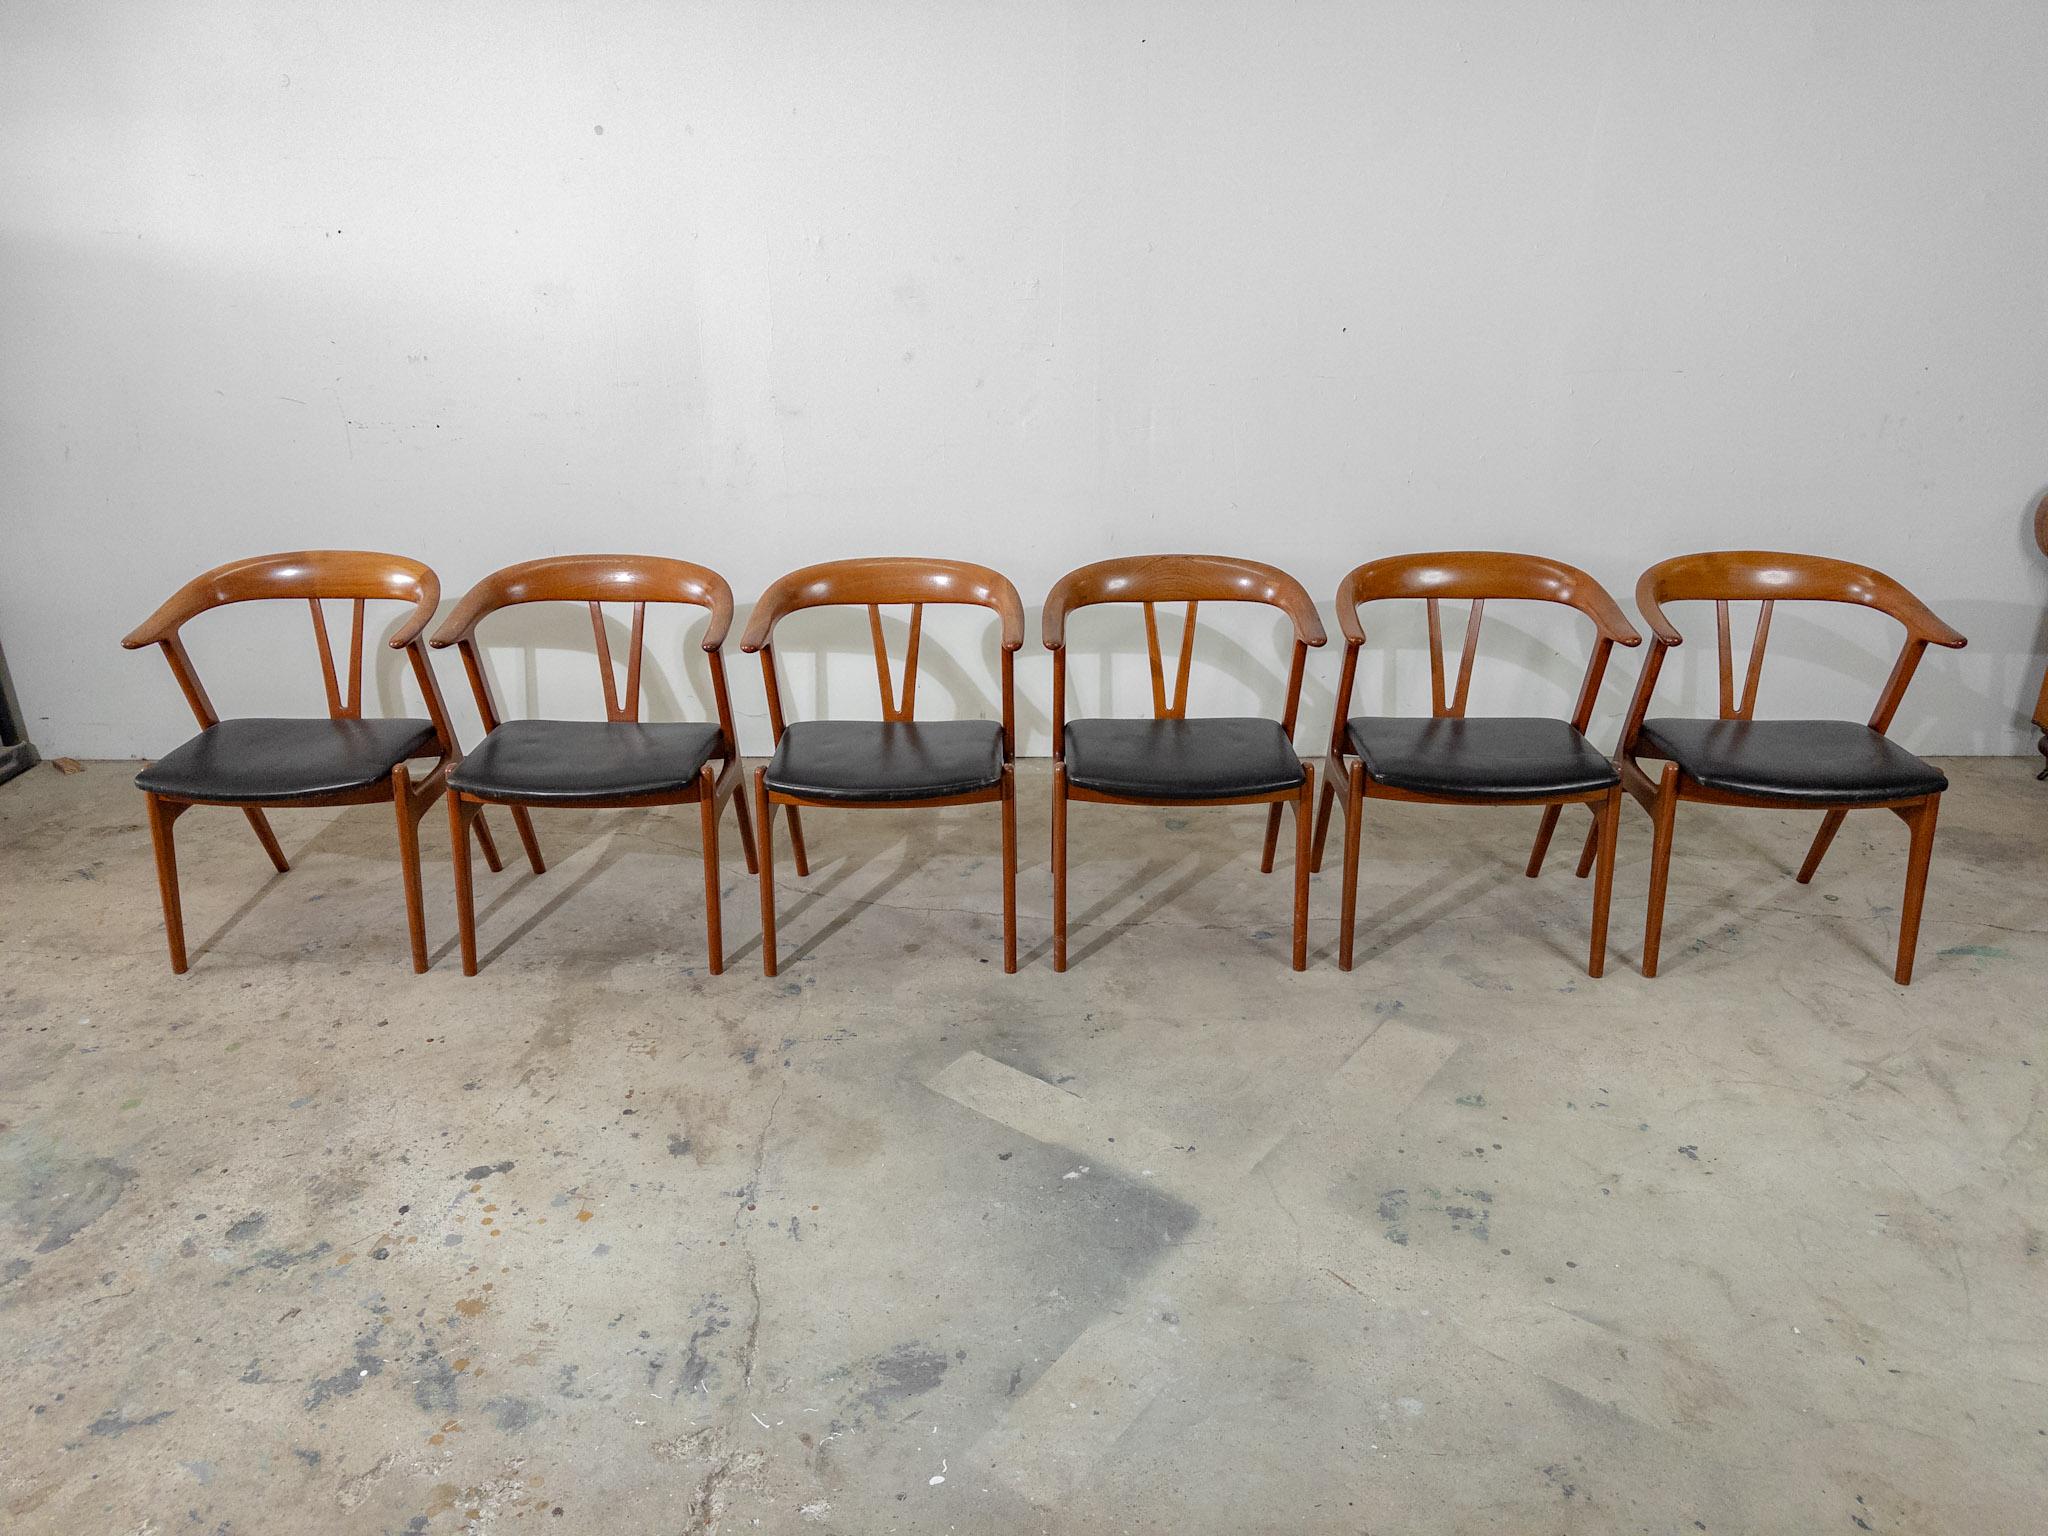 El Juego de 6 Sillas de Comedor Noruegas Torbjørn Afdal representa el epítome de la excelencia del diseño escandinavo y la elegancia atemporal. Fabricadas con precisión y atención al detalle, estas sillas presentan una estética elegante y